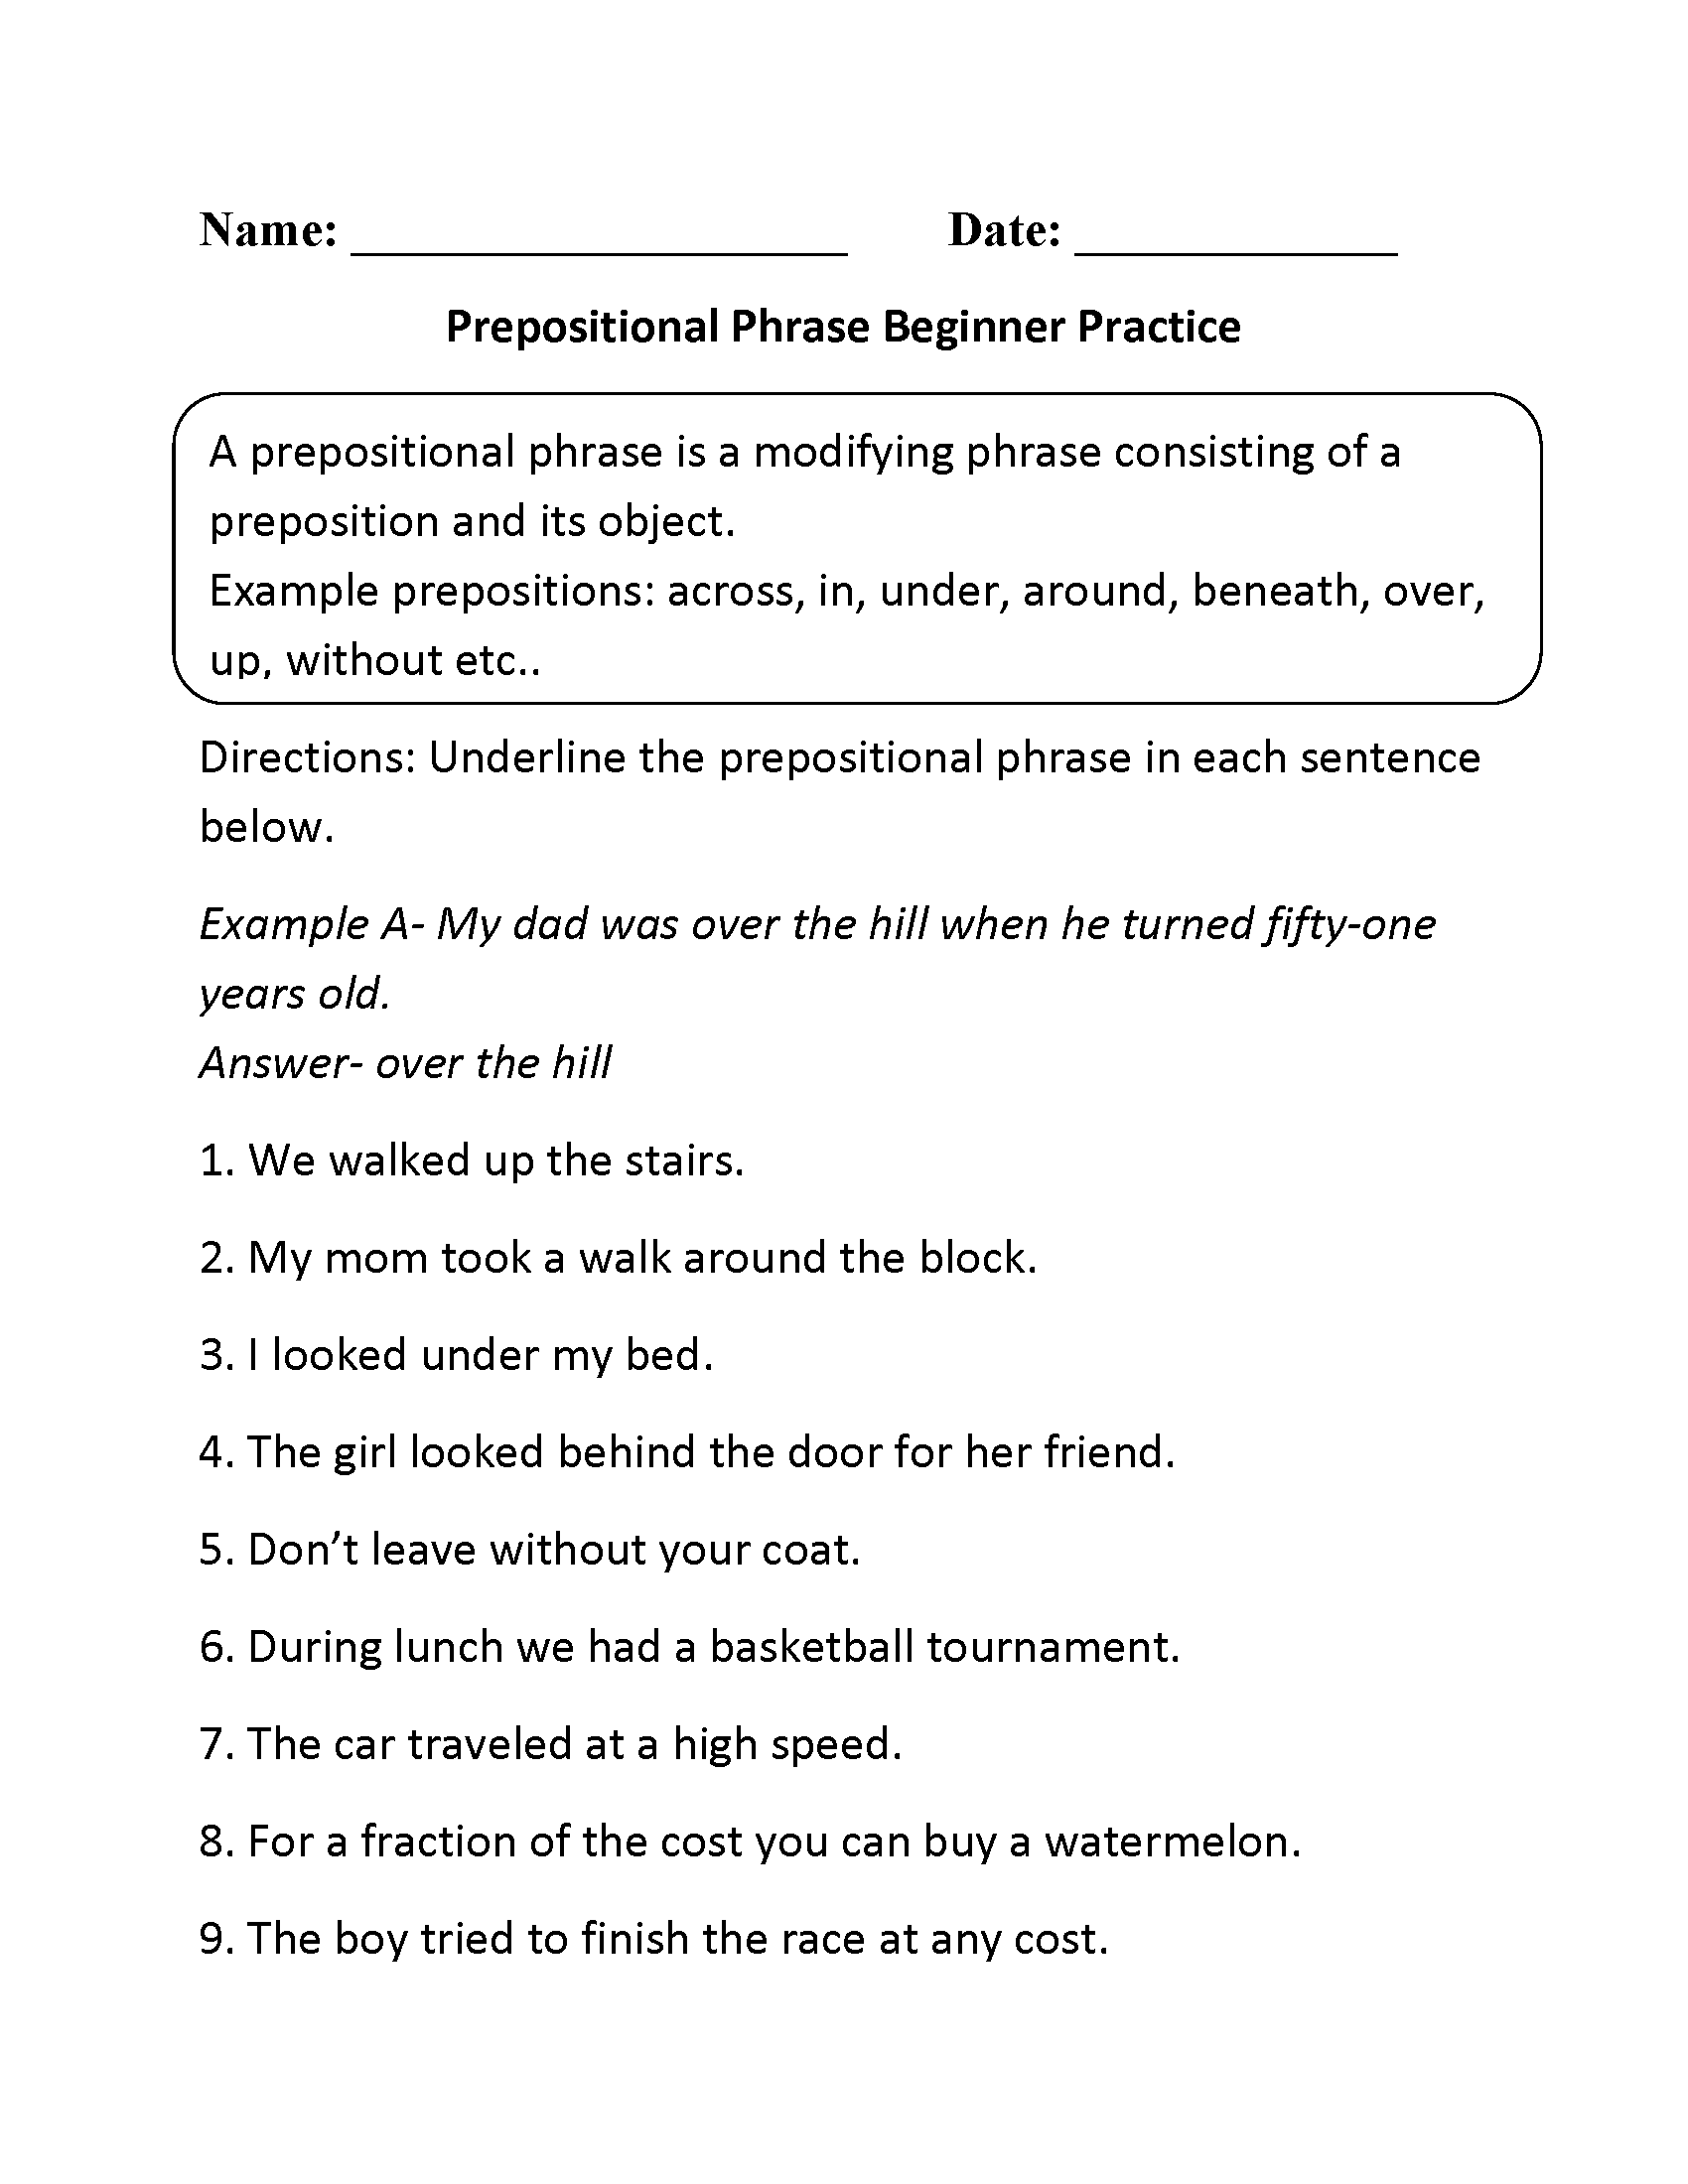 prepositional-phrases-worksheets-prepostional-phrase-beginner